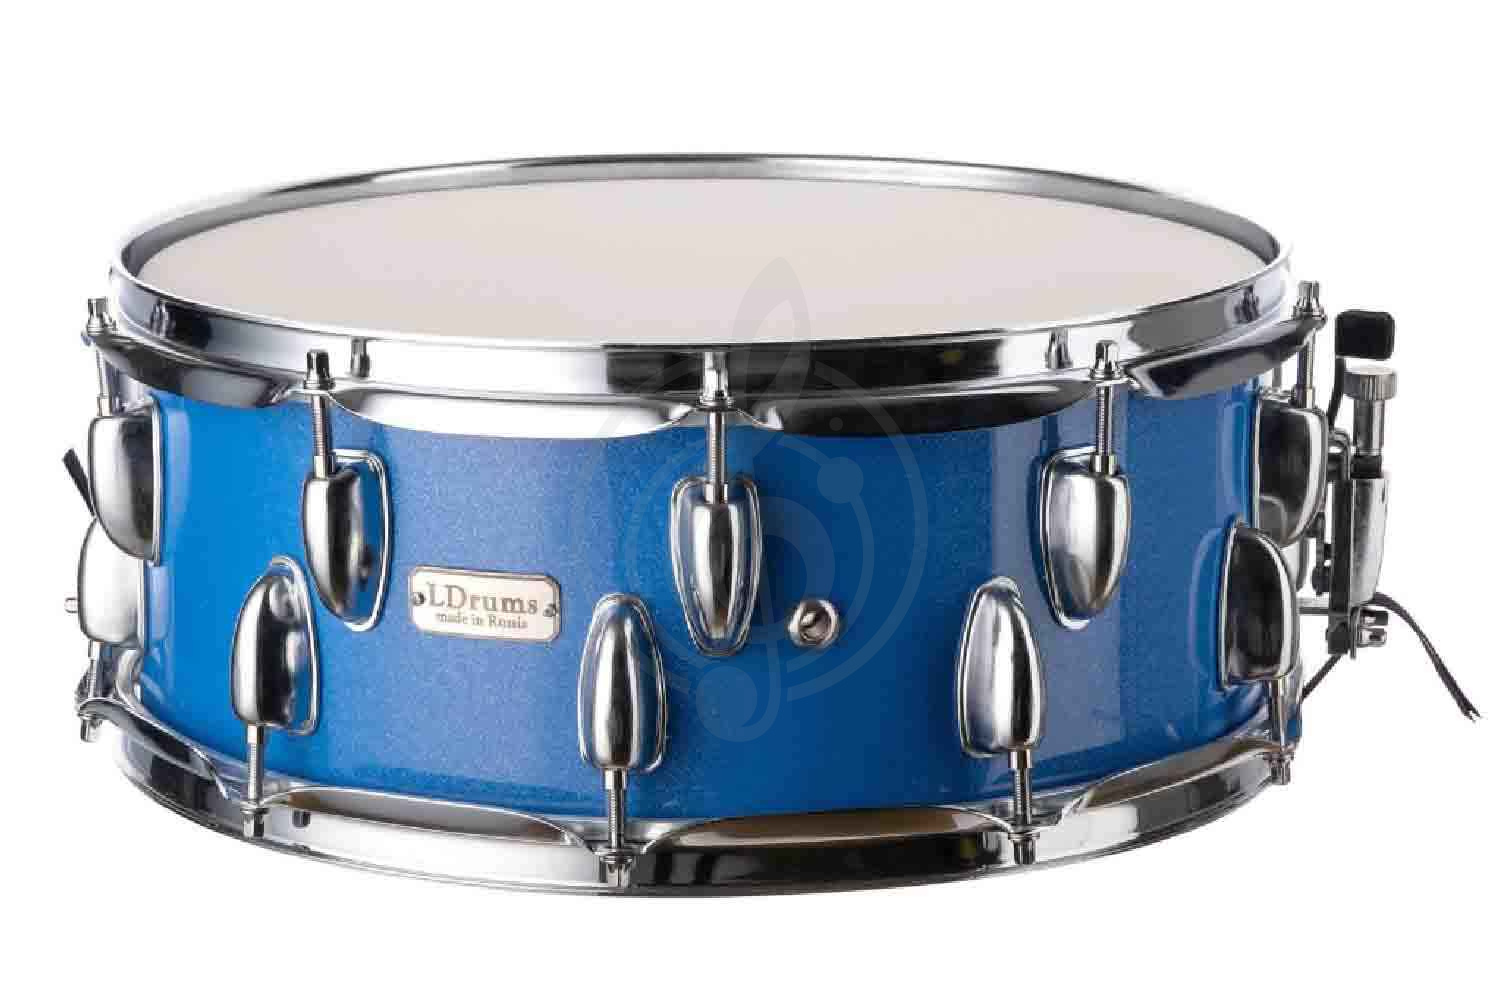 Малый барабан LDrums LD5407SN - Малый барабан, синий, 14"х5,5", LDrums LD5407SN в магазине DominantaMusic - фото 1